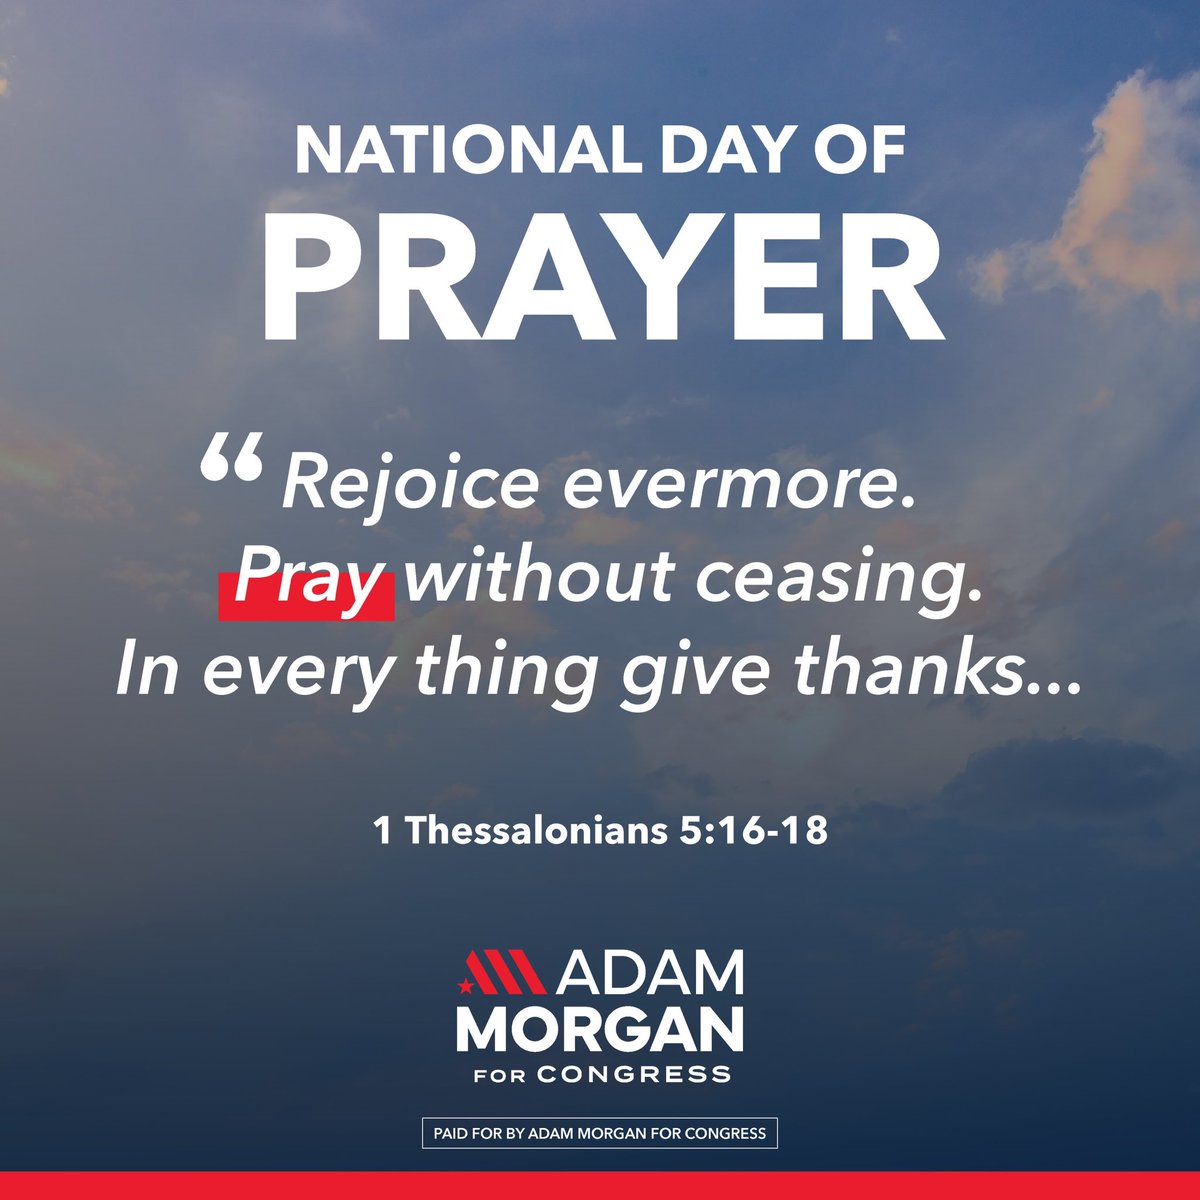 Pray without ceasing. #NationalDayOfPrayer